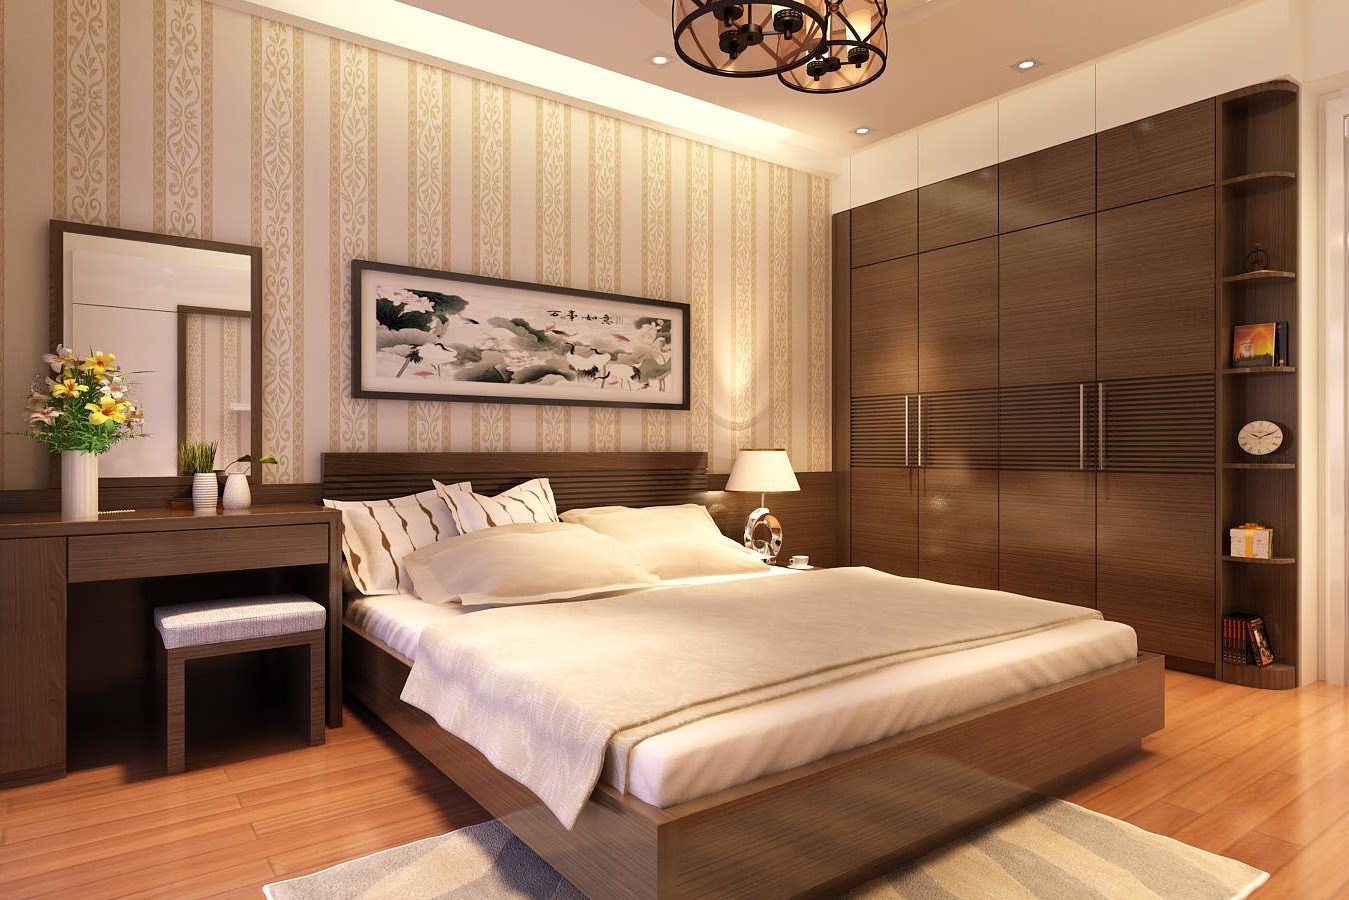 Phòng ngủ master của vợ chồng gia chủ đậm chất truyền thống với bảng màu nâu, be chủ đạo mang lại cảm giác bình yên và thư giãn.